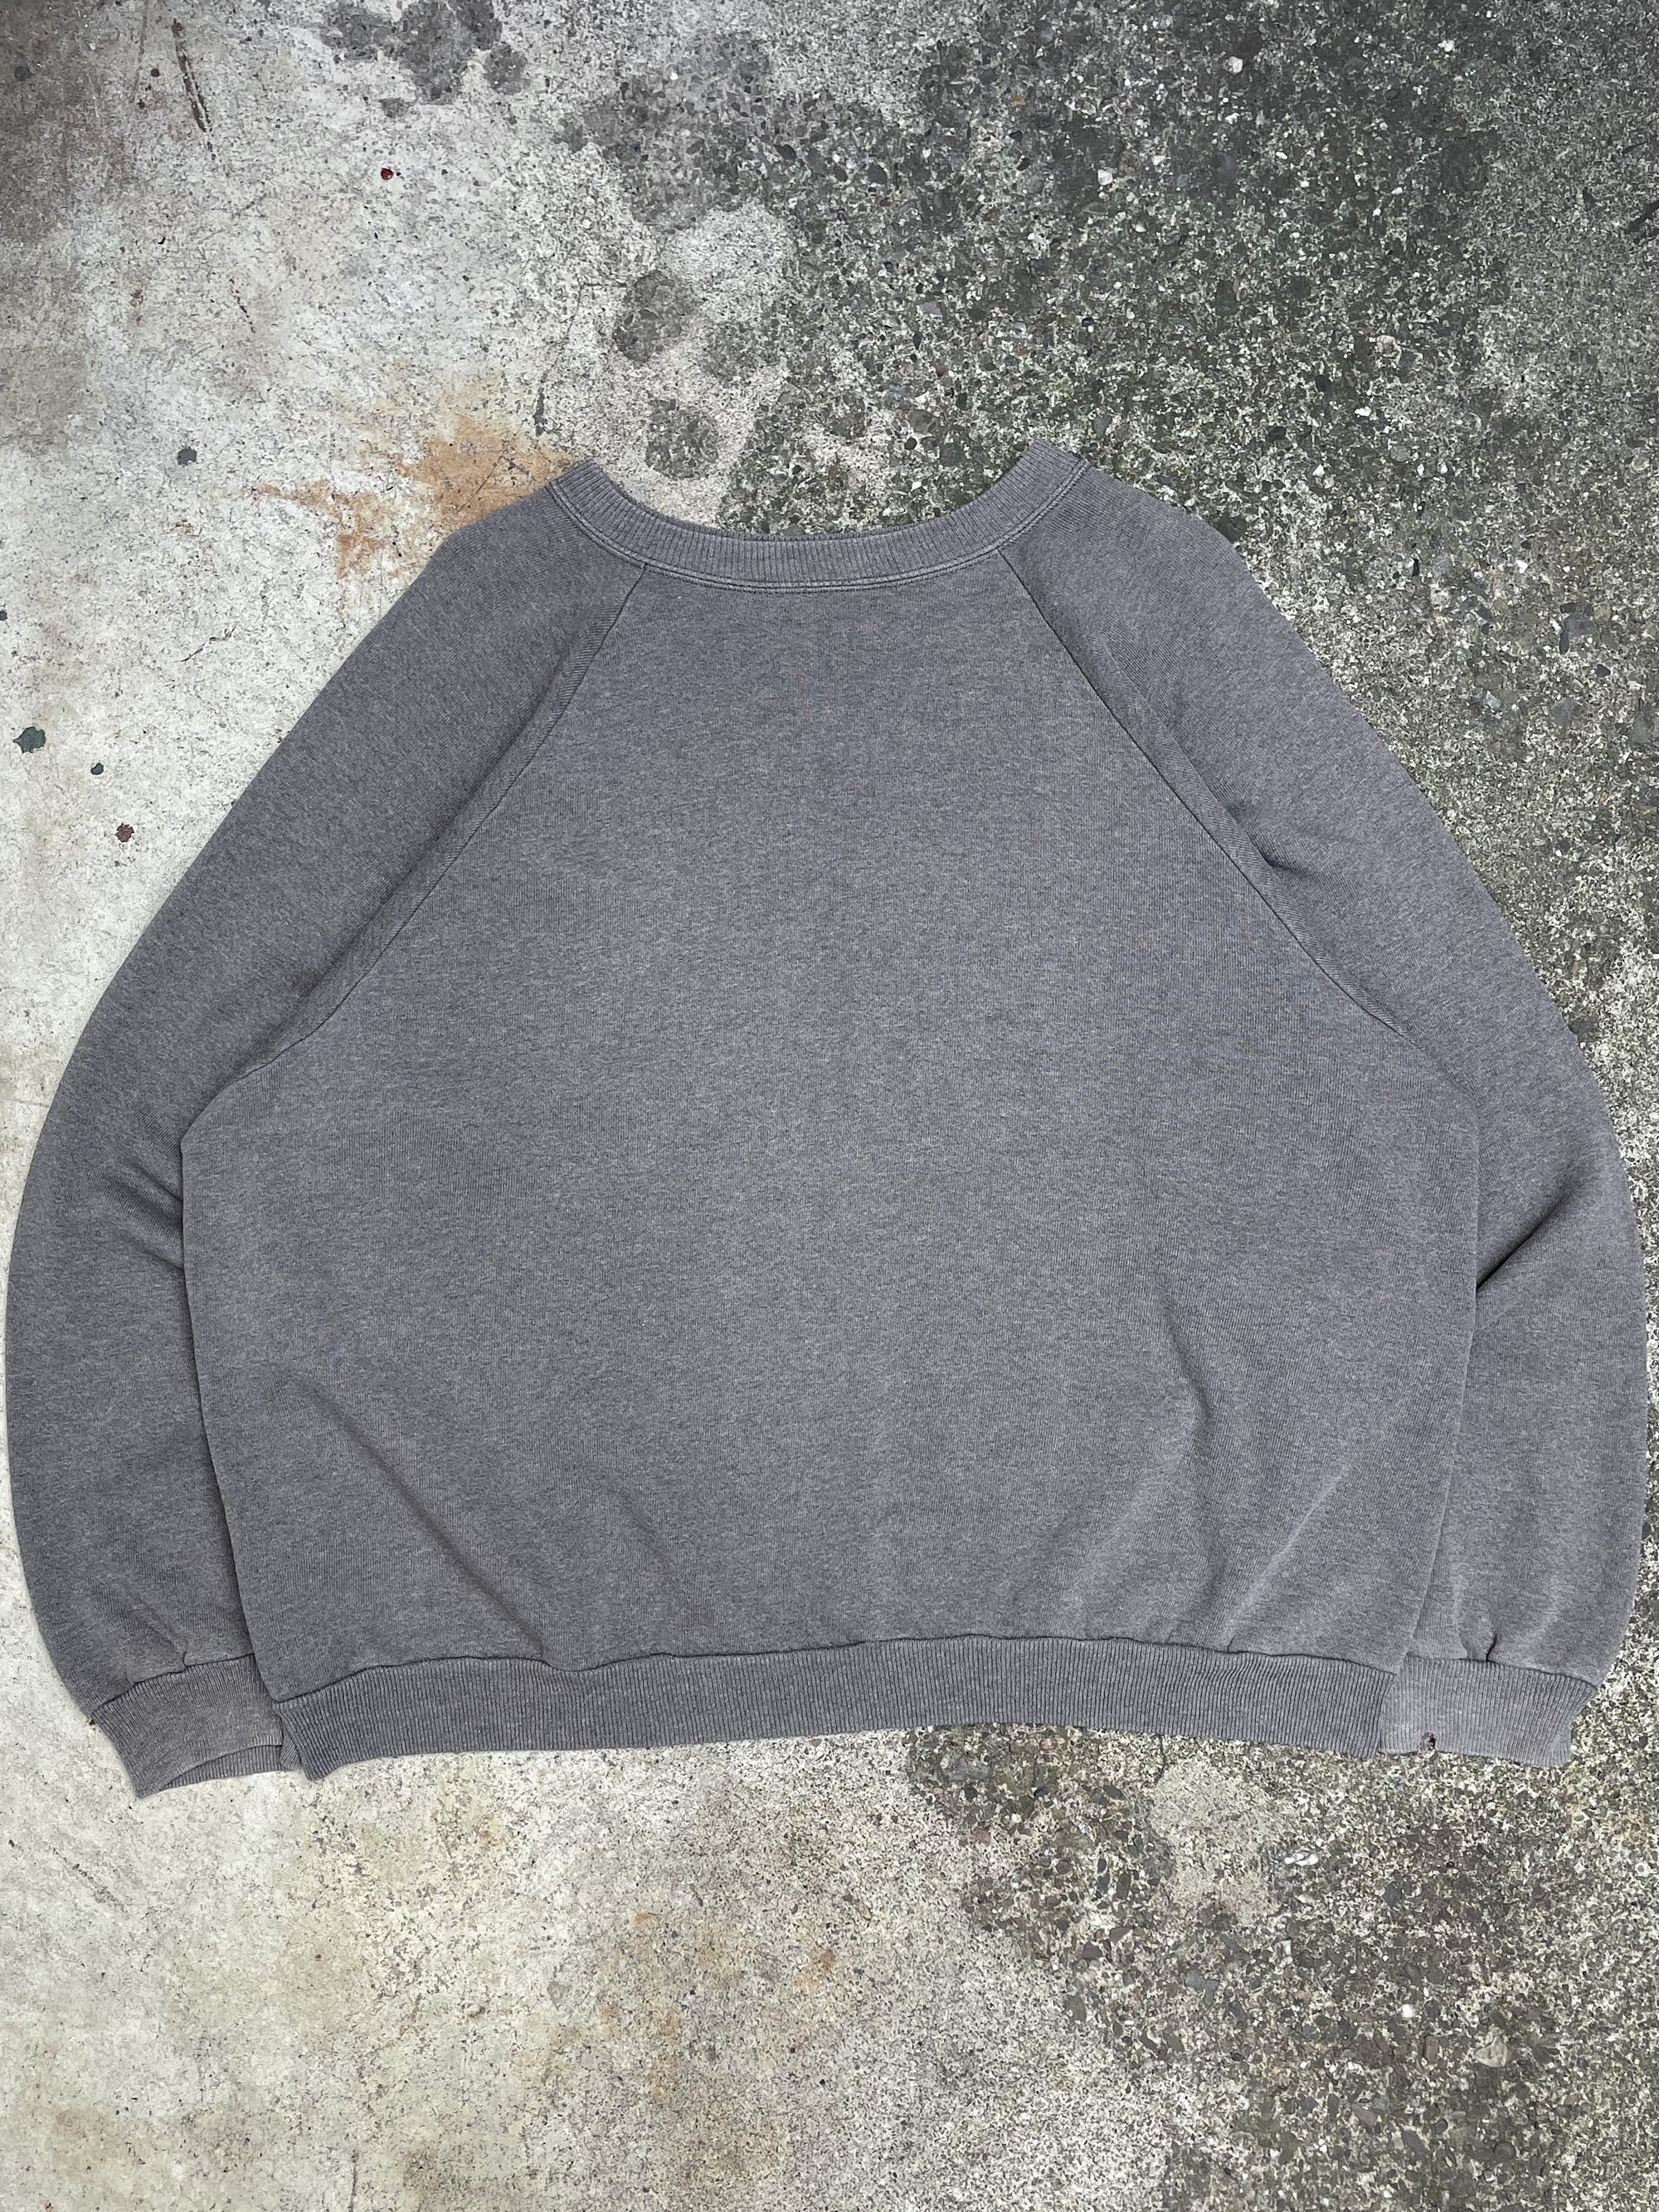 1990s Faded Grey Blank Raglan Sweatshirt (XL)